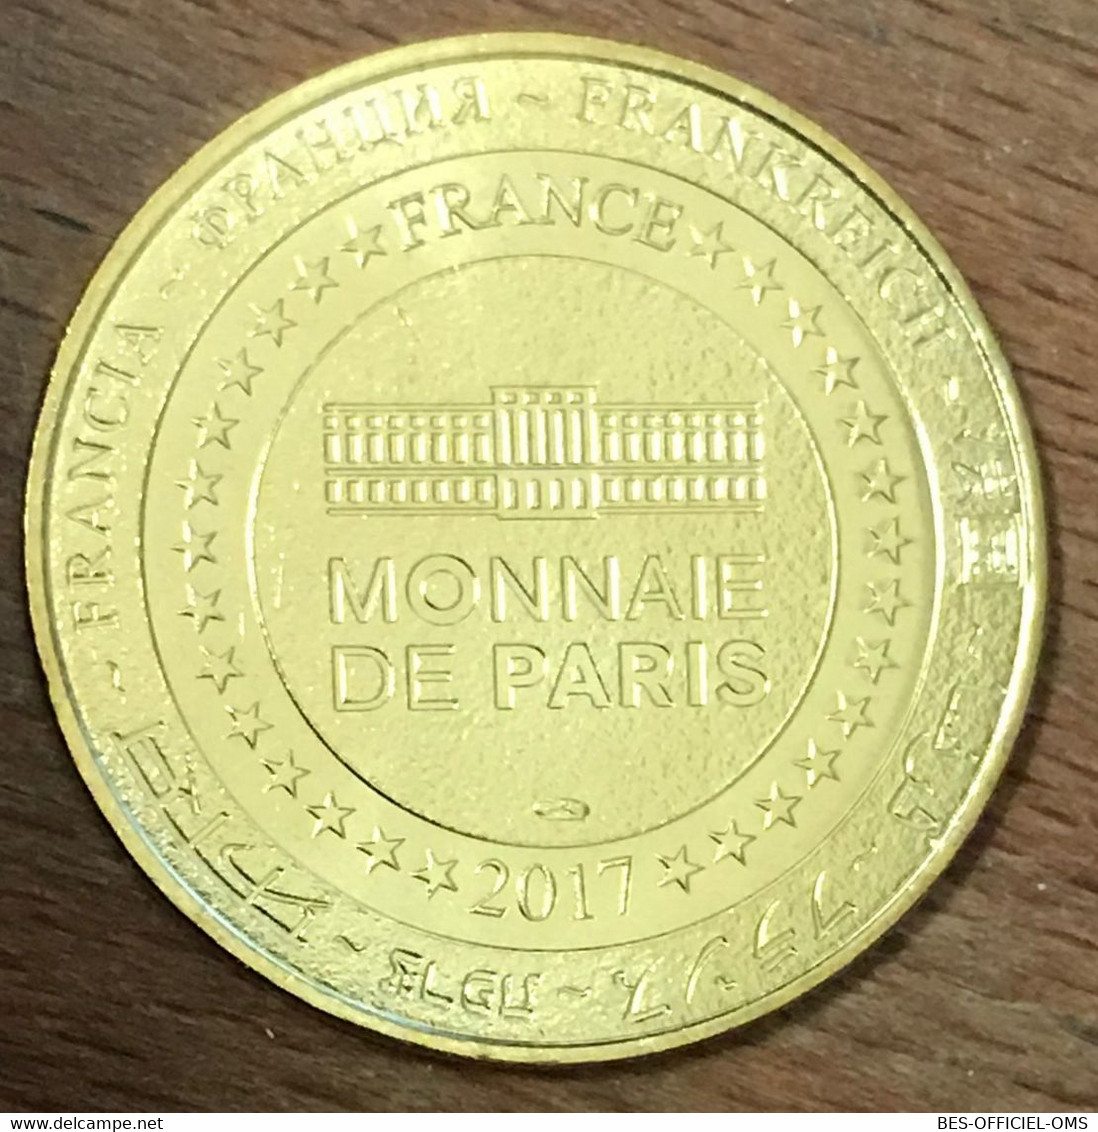 63 VULCANIA MONTGOLFIÈRE MDP 2017 MÉDAILLE SOUVENIR MONNAIE DE PARIS JETON TOURISTIQUE MEDALS COINS TOKENS - 2017